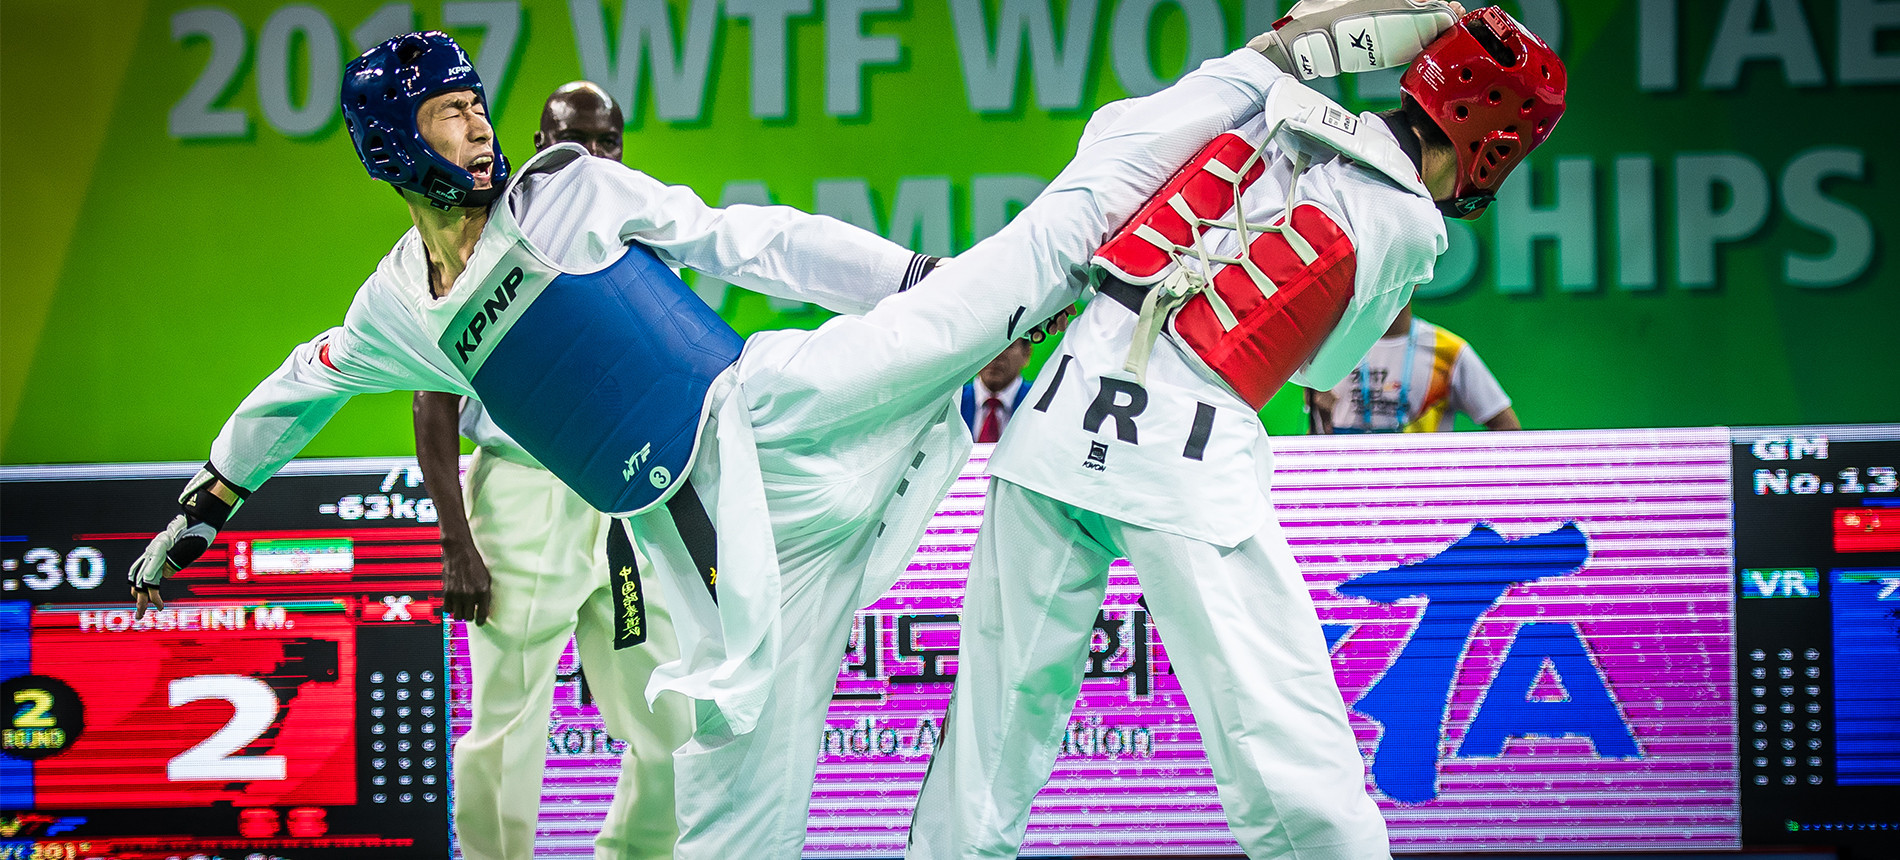 The Taekwondowon played host to last year’s World Taekwondo Championships ©World Taekwondo